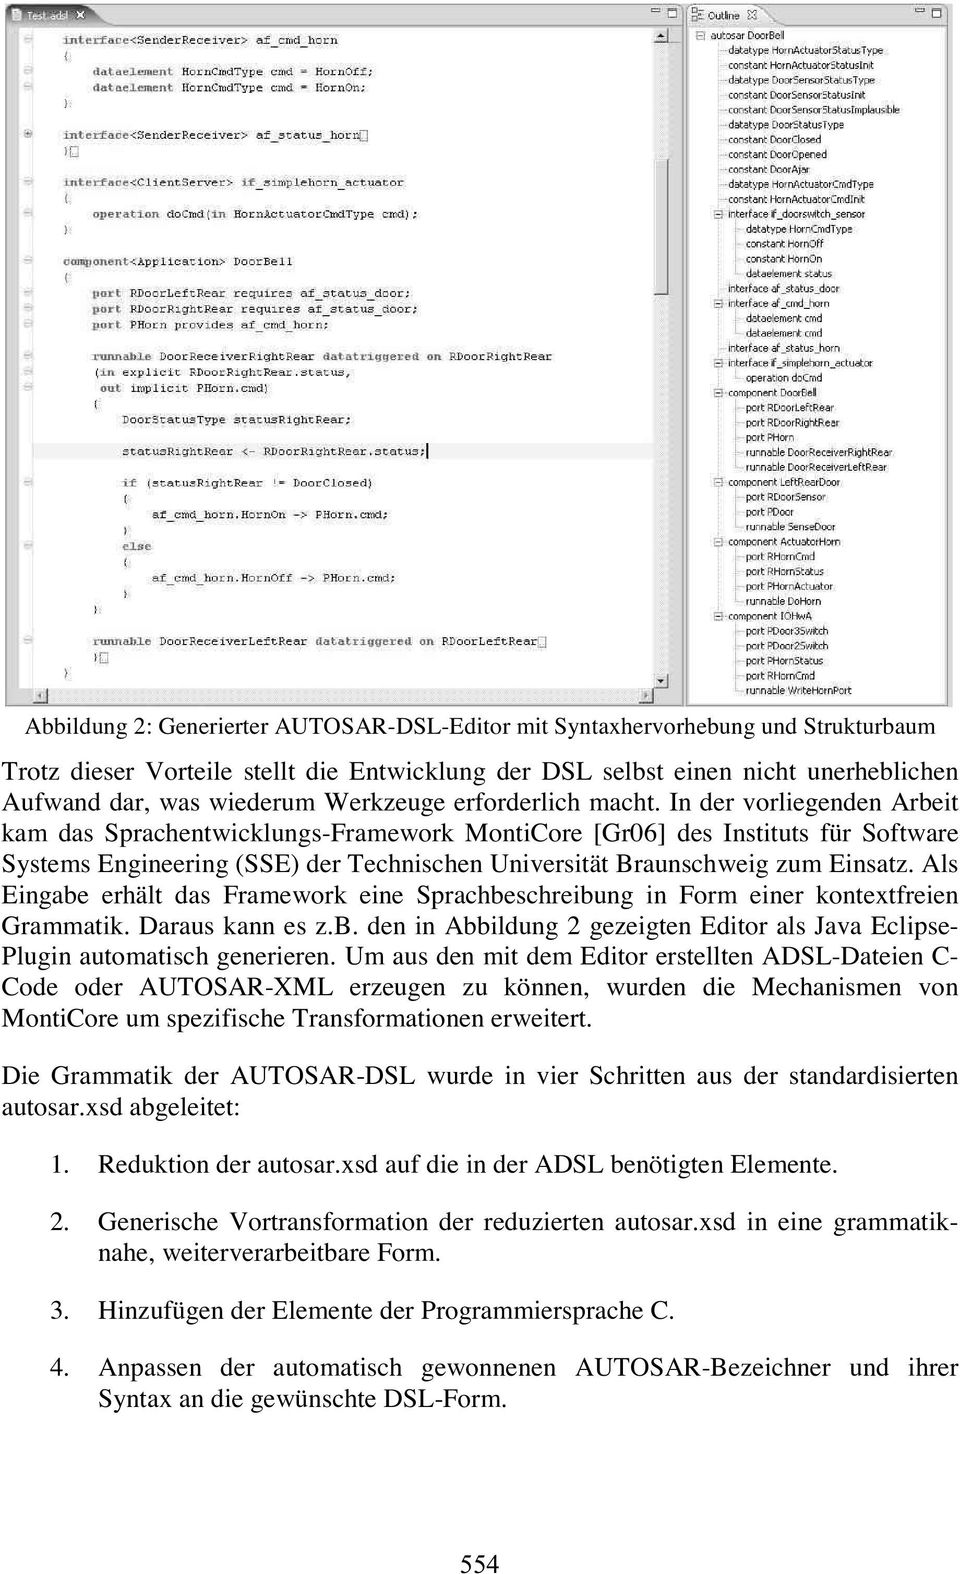 In der vorliegenden Arbeit kam das Sprachentwicklungs-Framework MontiCore[Gr06] des Instituts für Software Systems Engineering(SSE) der Technischen Universität Braunschweig zum Einsatz.